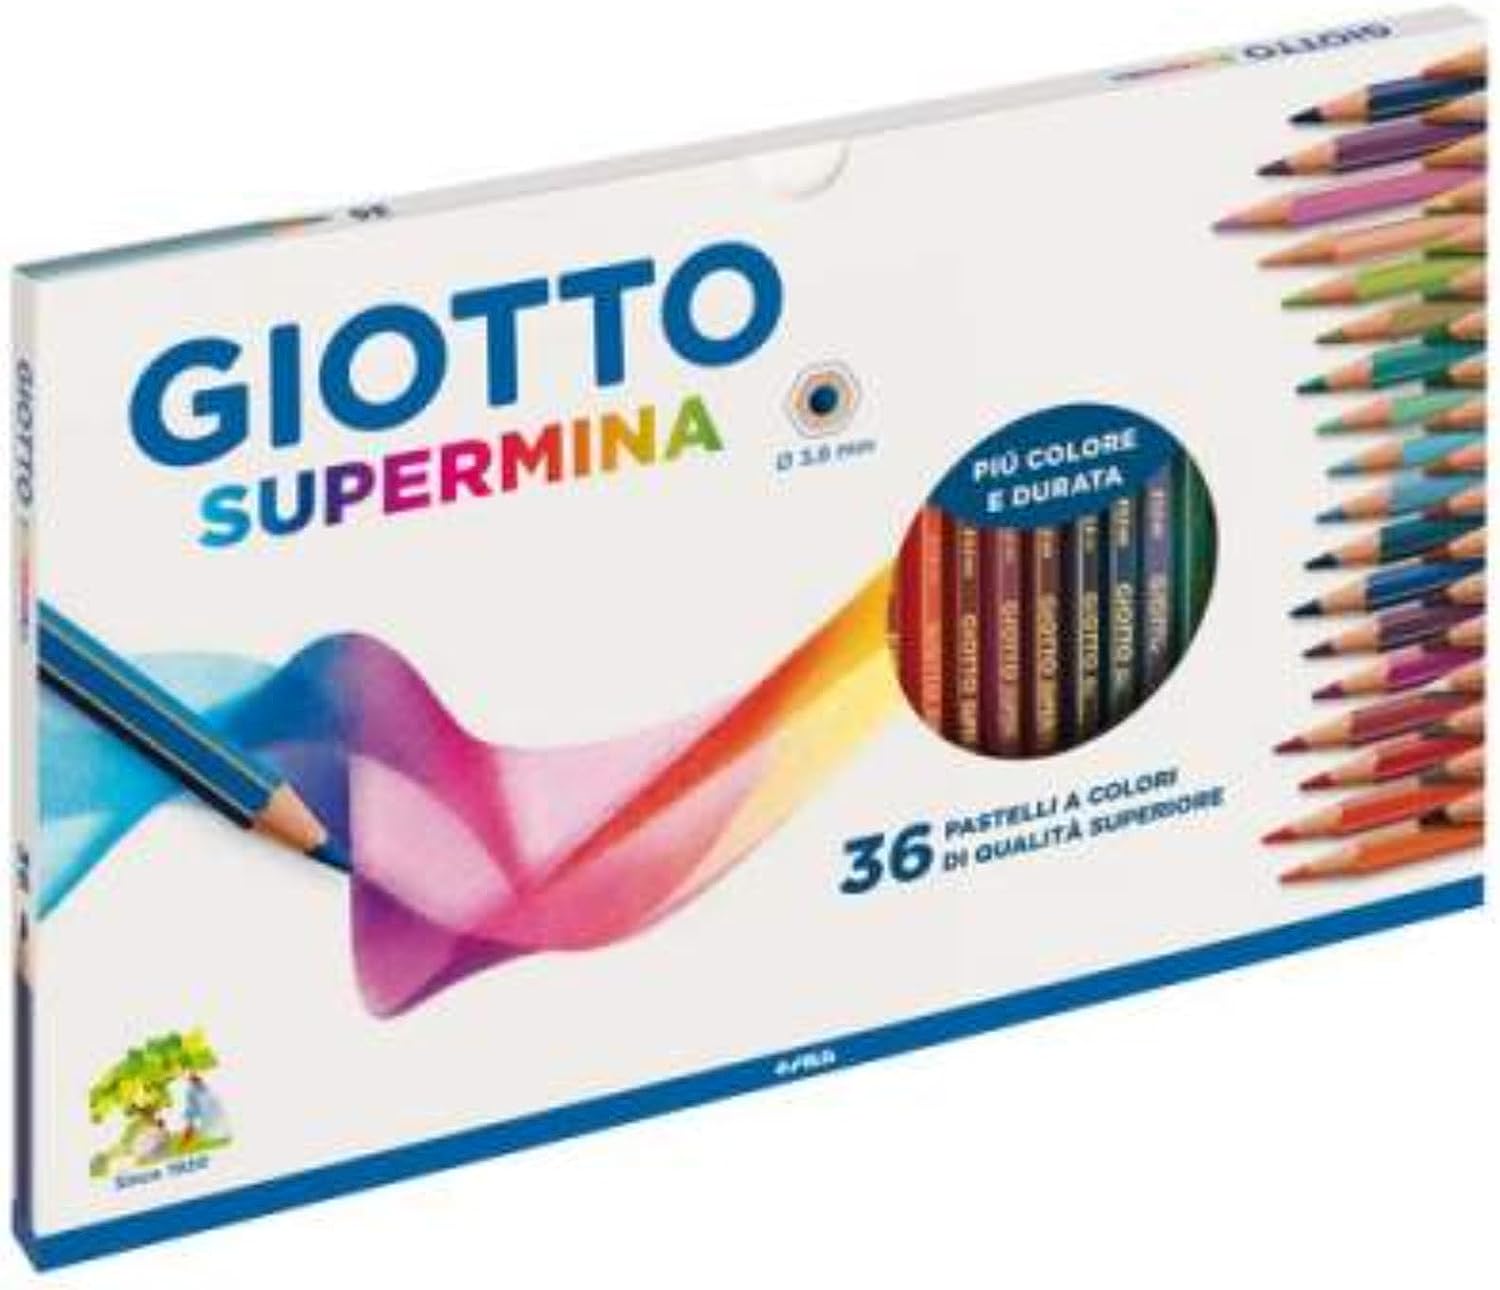 Giotto Supermina 36 pastelli a colori